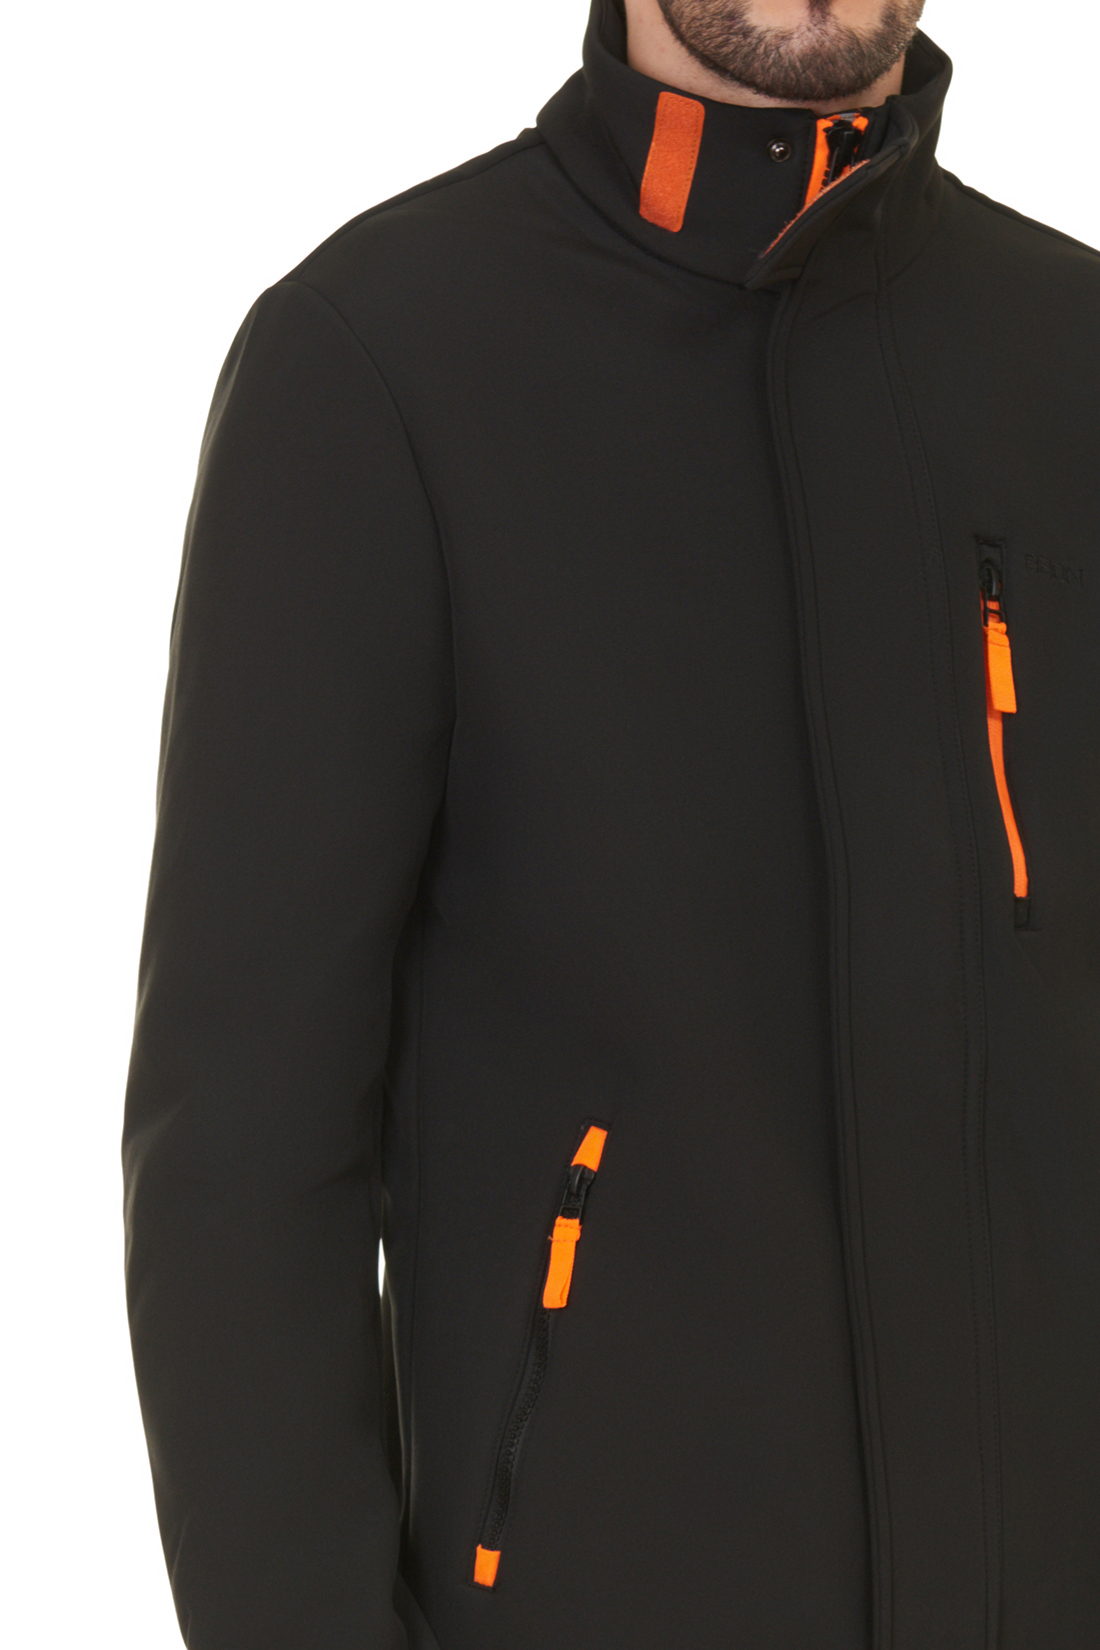 Куртка из виндблока (арт. baon B537504), размер M, цвет черный Куртка из виндблока (арт. baon B537504) - фото 4